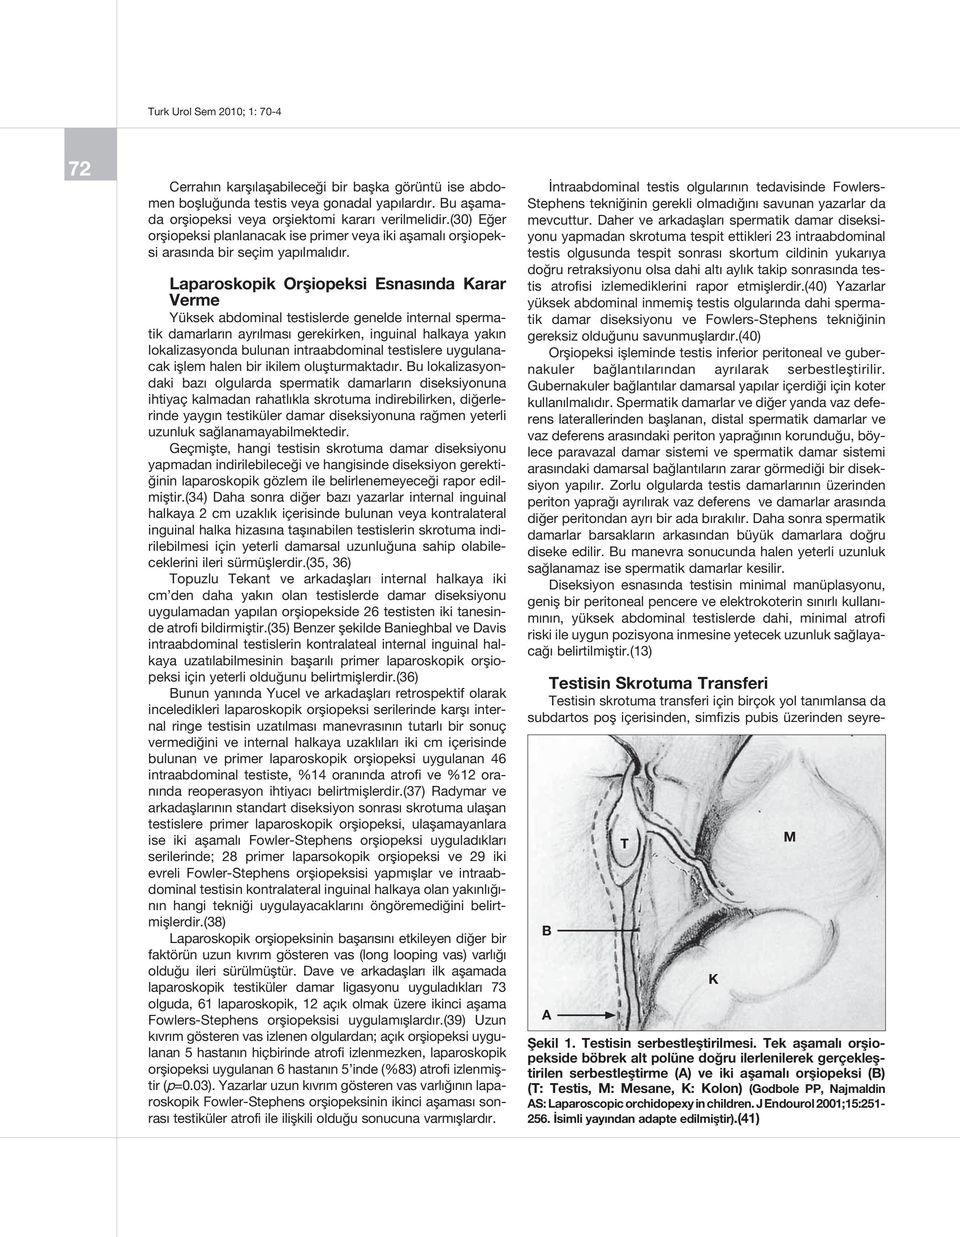 Laparoskopik Orşiopeksi Esnasında Karar Verme Yüksek abdominal testislerde genelde internal spermatik damarların ayrılması gerekirken, inguinal halkaya yakın lokalizasyonda bulunan intraabdominal